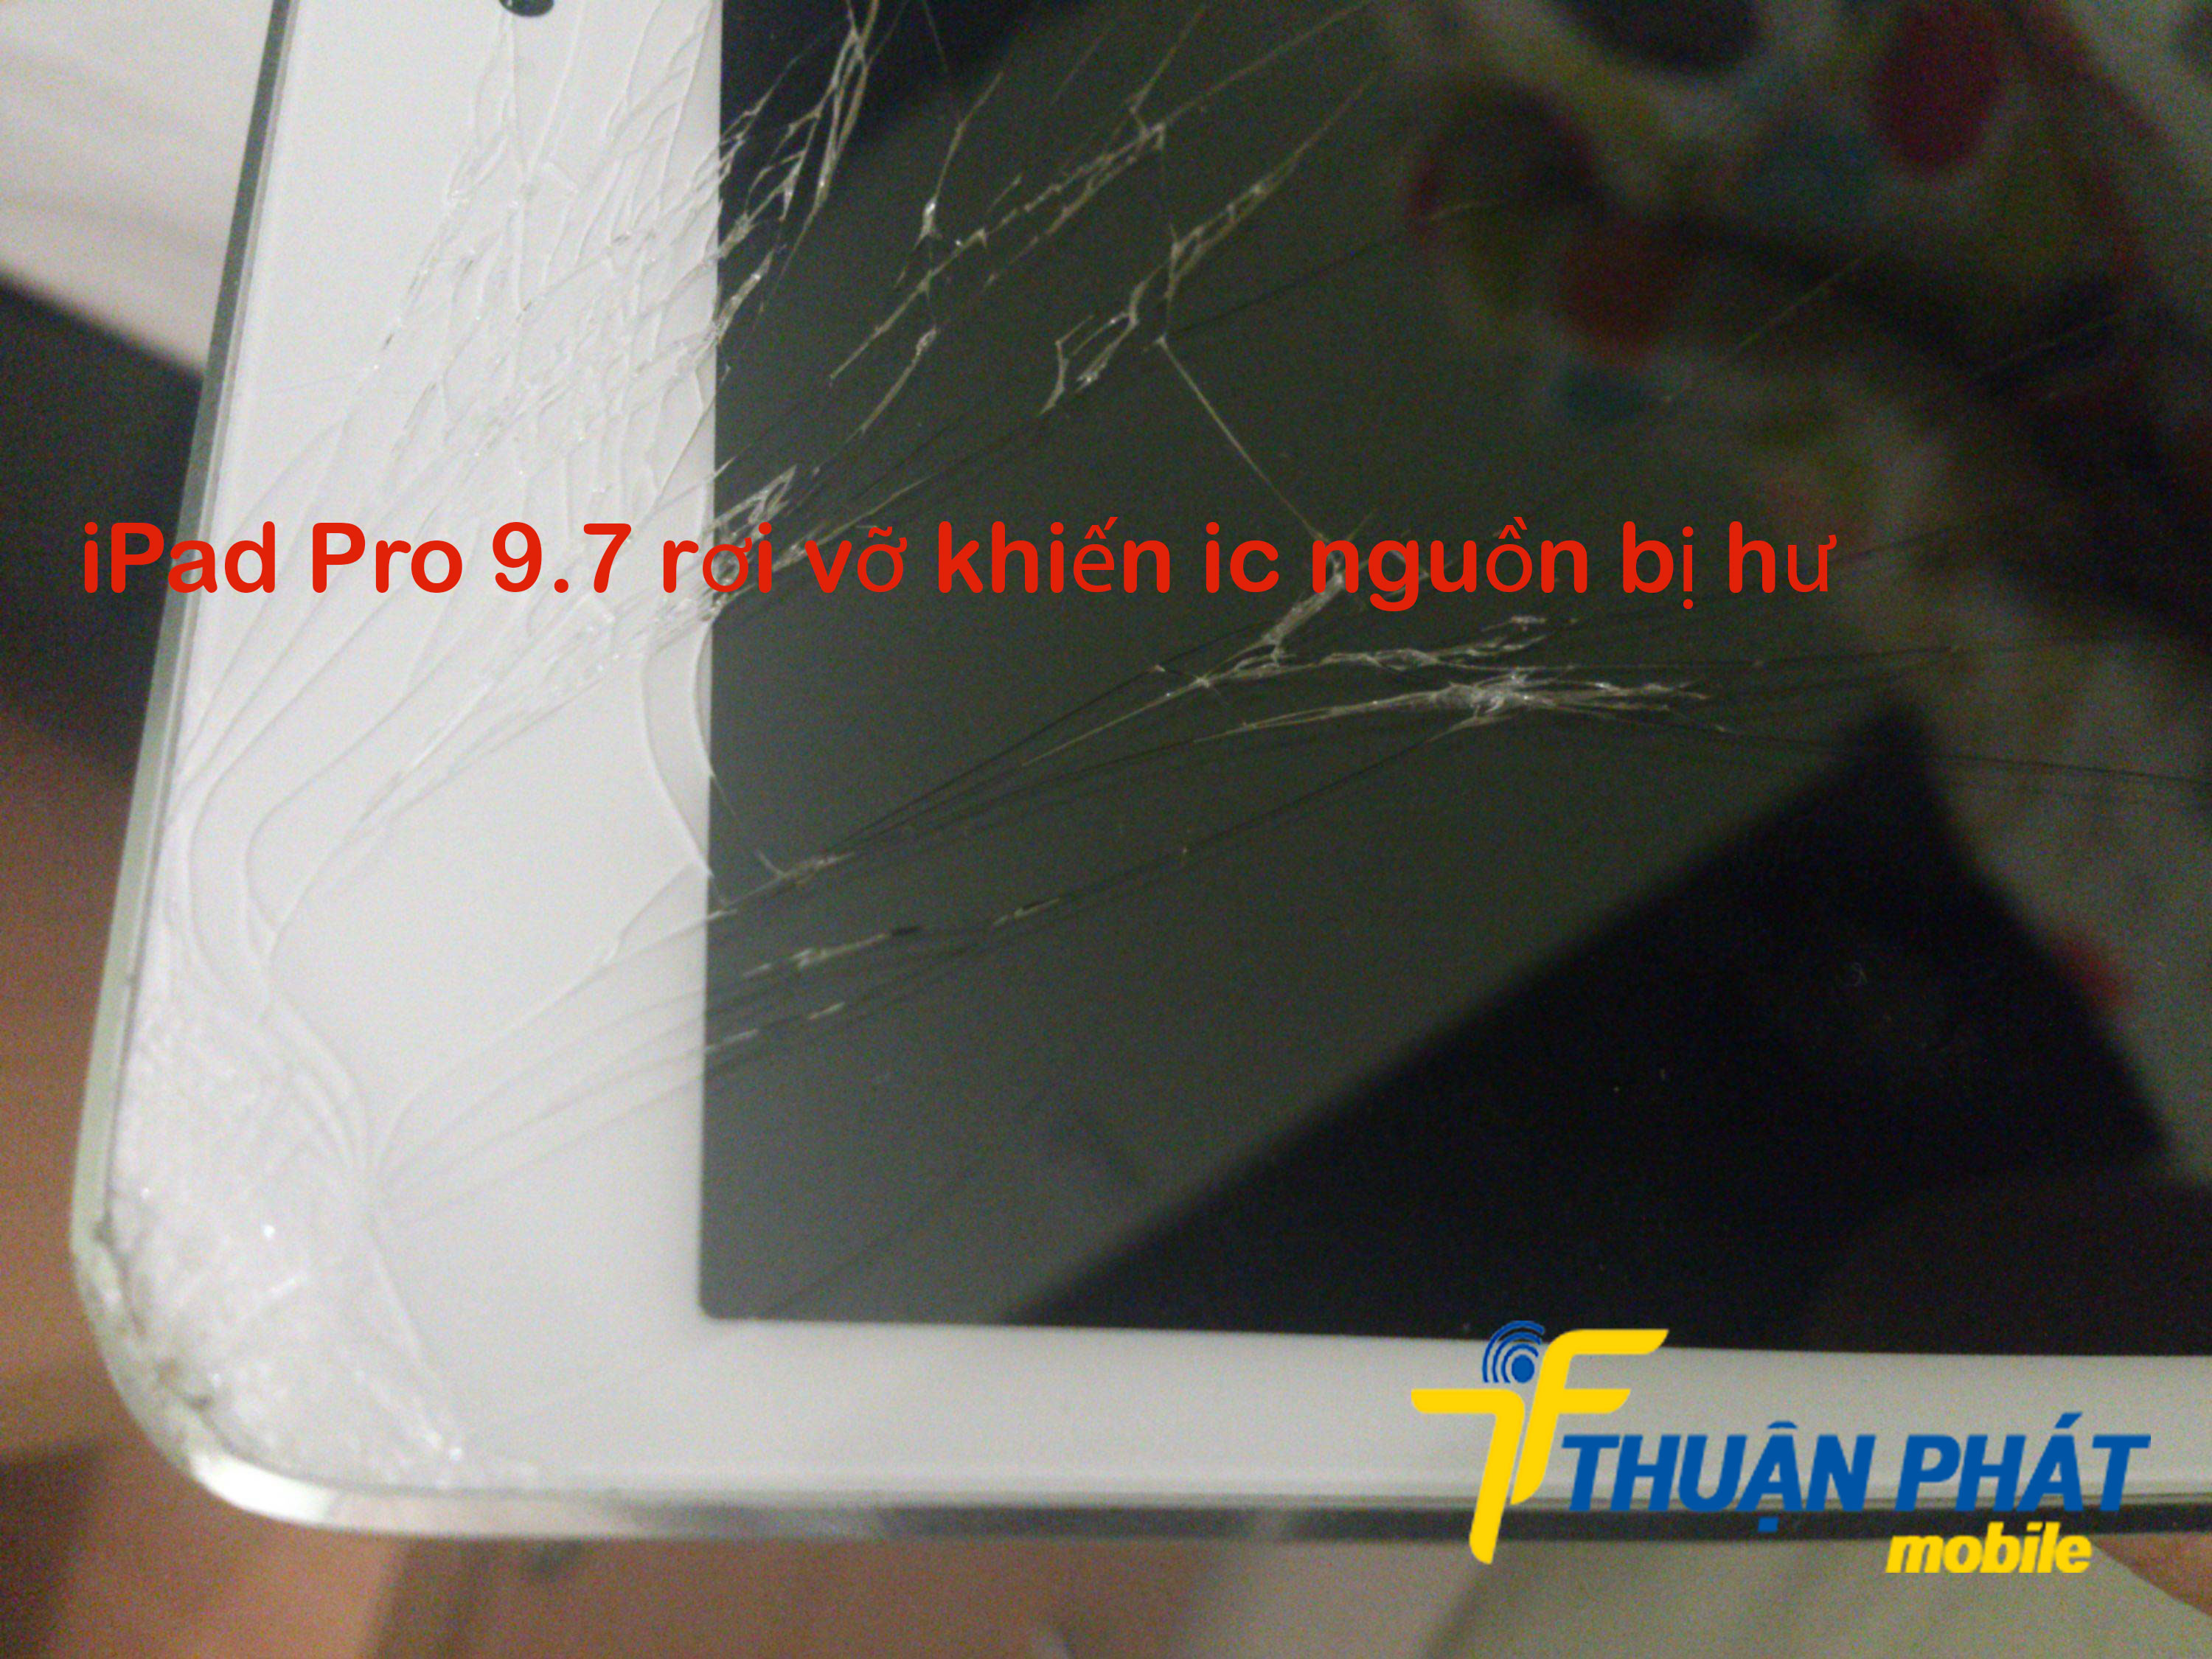 iPad Pro 9.7 rơi vỡ khiến ic nguồn bị hư